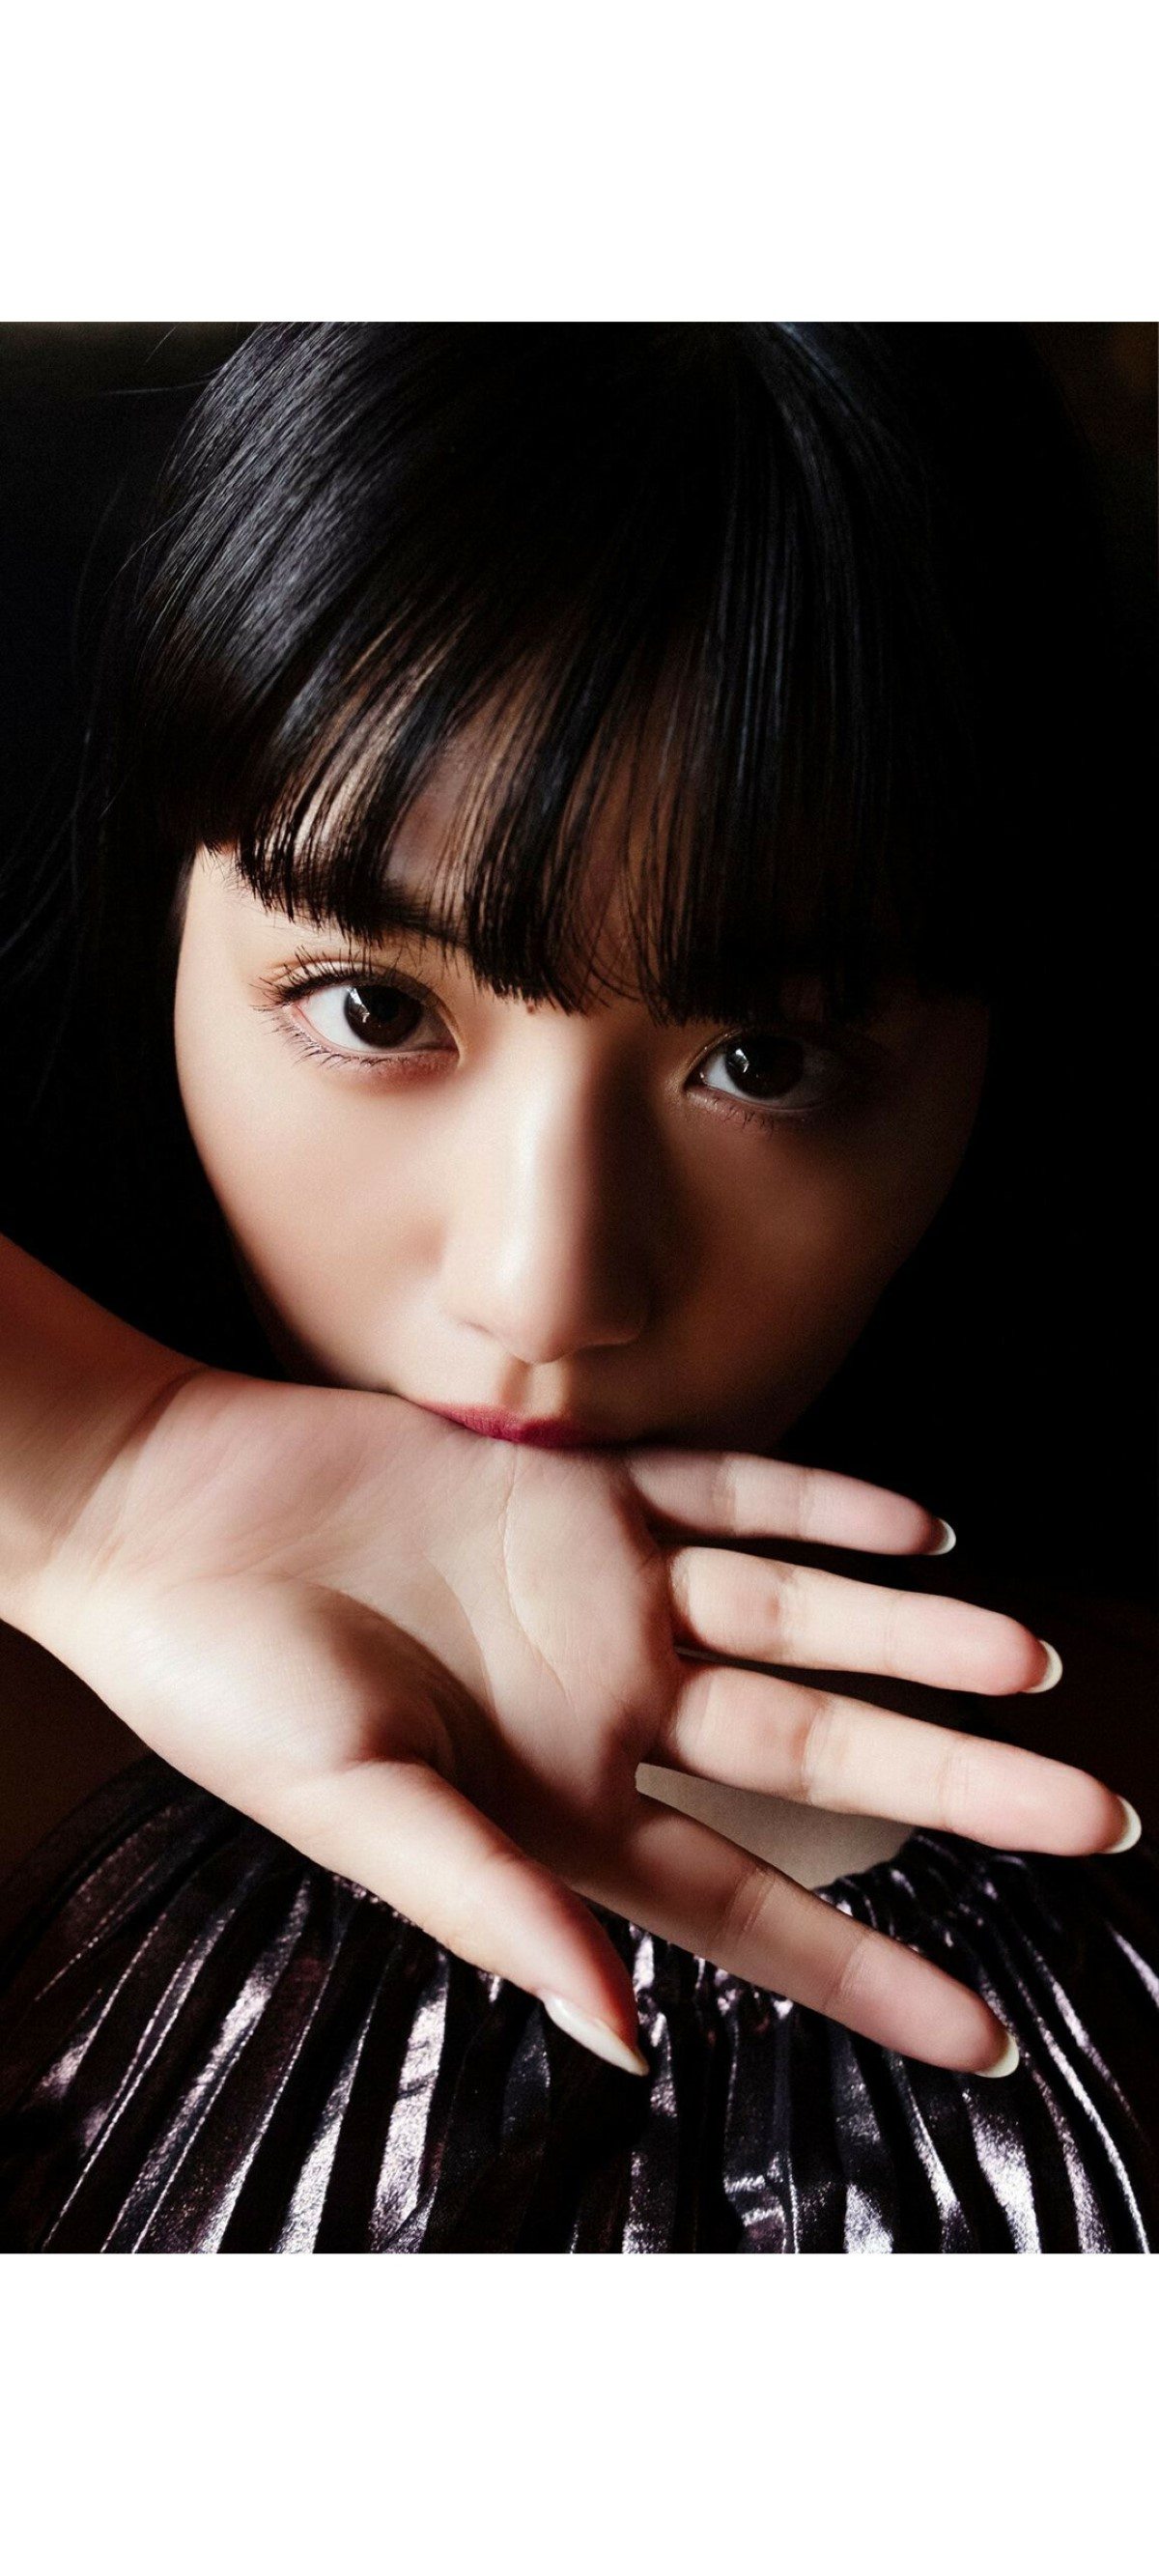 Weekly Photobook 2020 12 07 Noa Tsurushima 鶴嶋乃愛 A natural actress 生まれながらにして女優 0047 4792179859.jpg